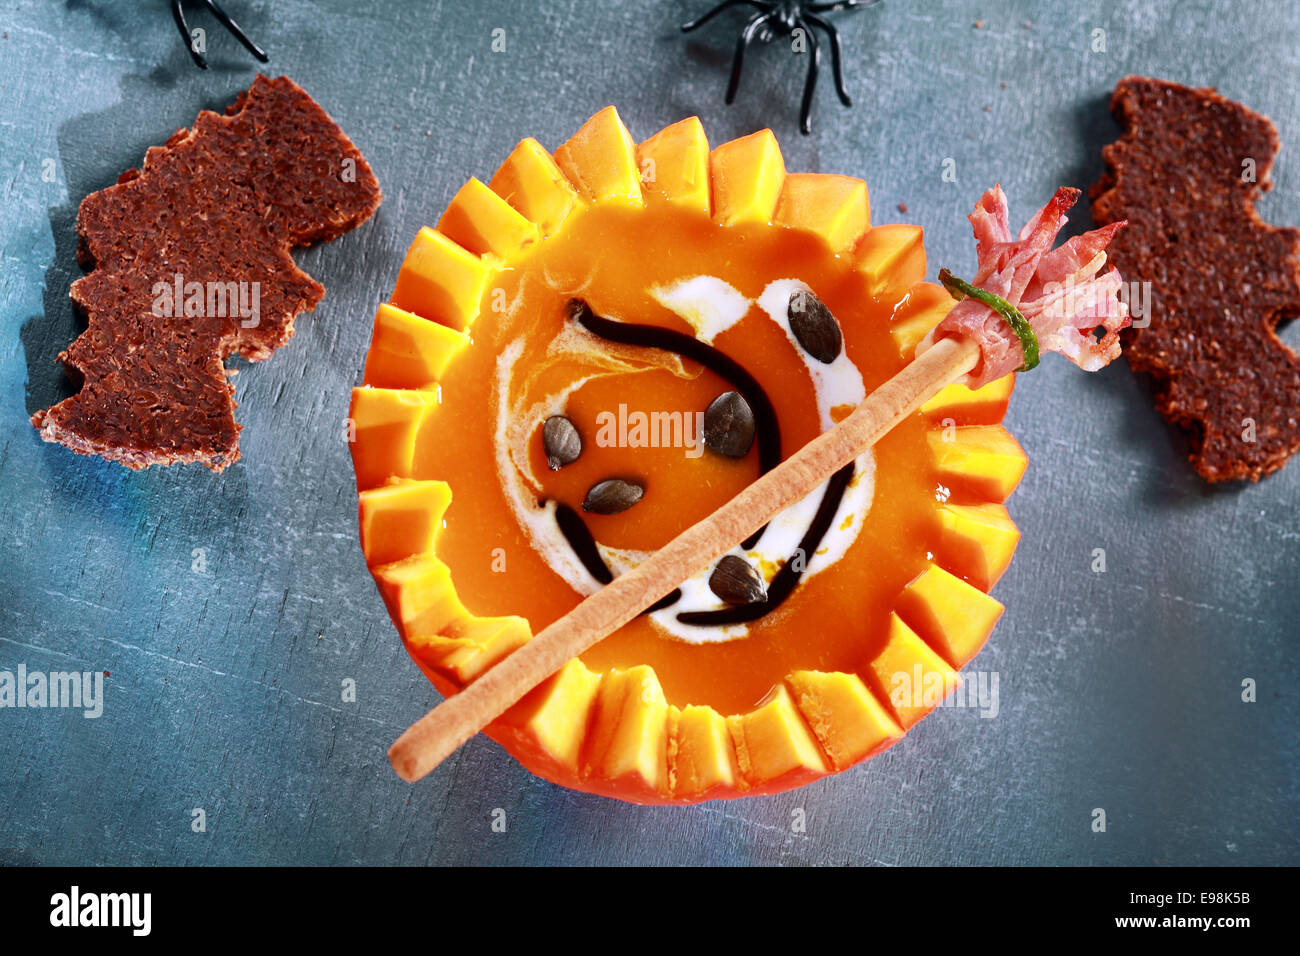 Se sirve sopa de calabaza de Halloween en la mitad de una calabaza con forma de murciélago Crouton tostadas y escoba Pan Stick desde arriba Foto de stock